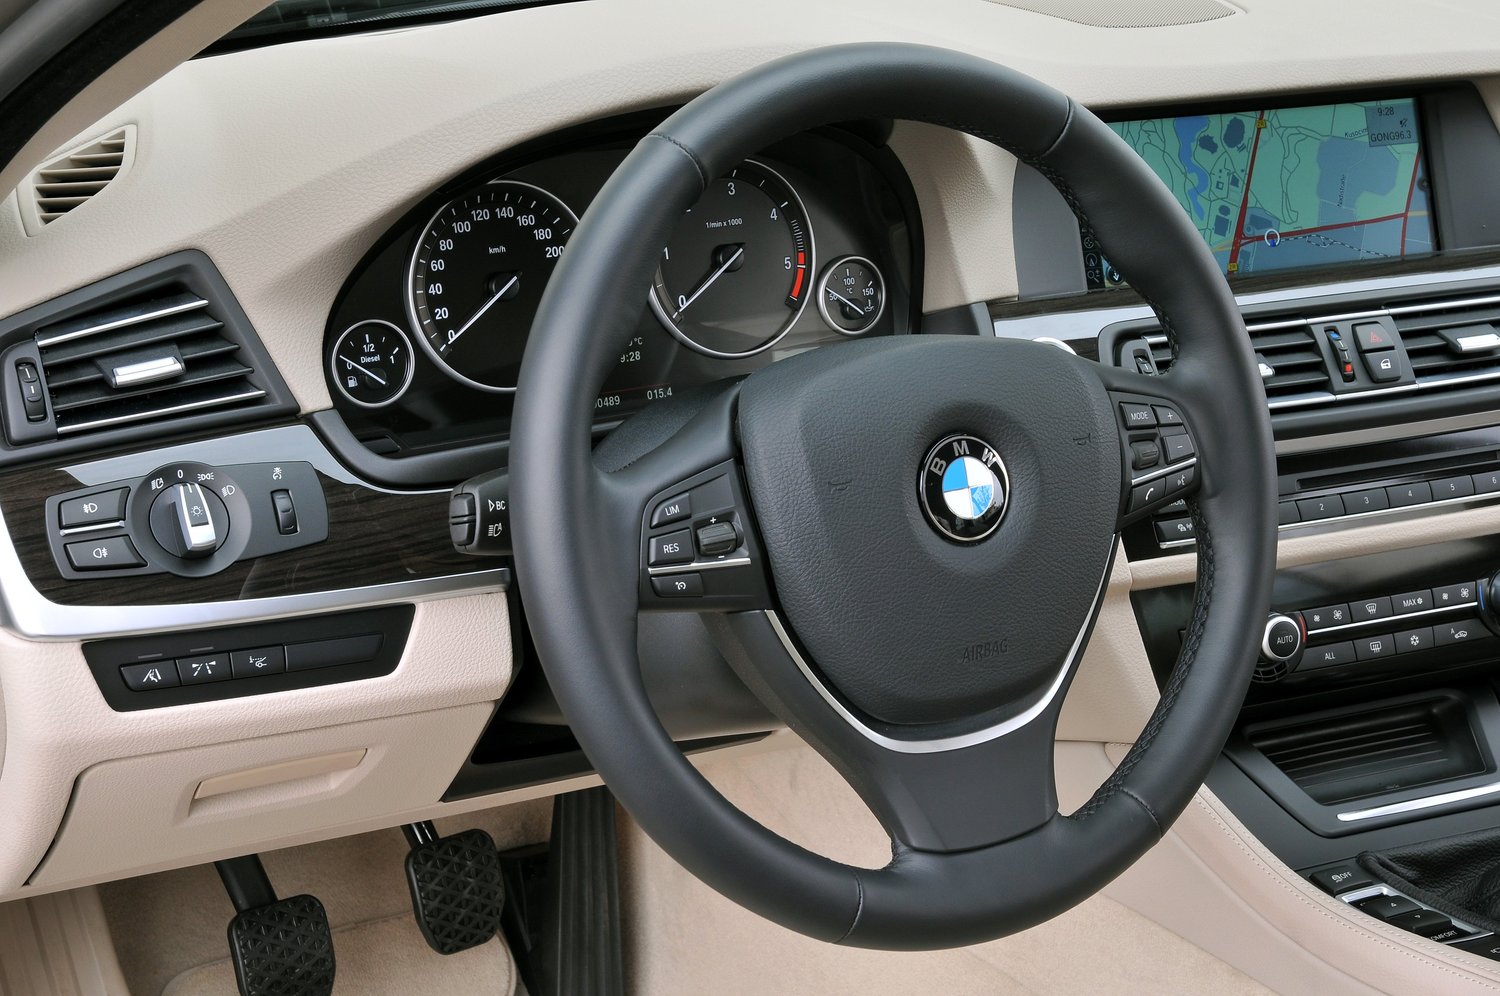 универсал BMW 5er 2010 - 2013г выпуска модификация 2.5 AT (204 л.с.)